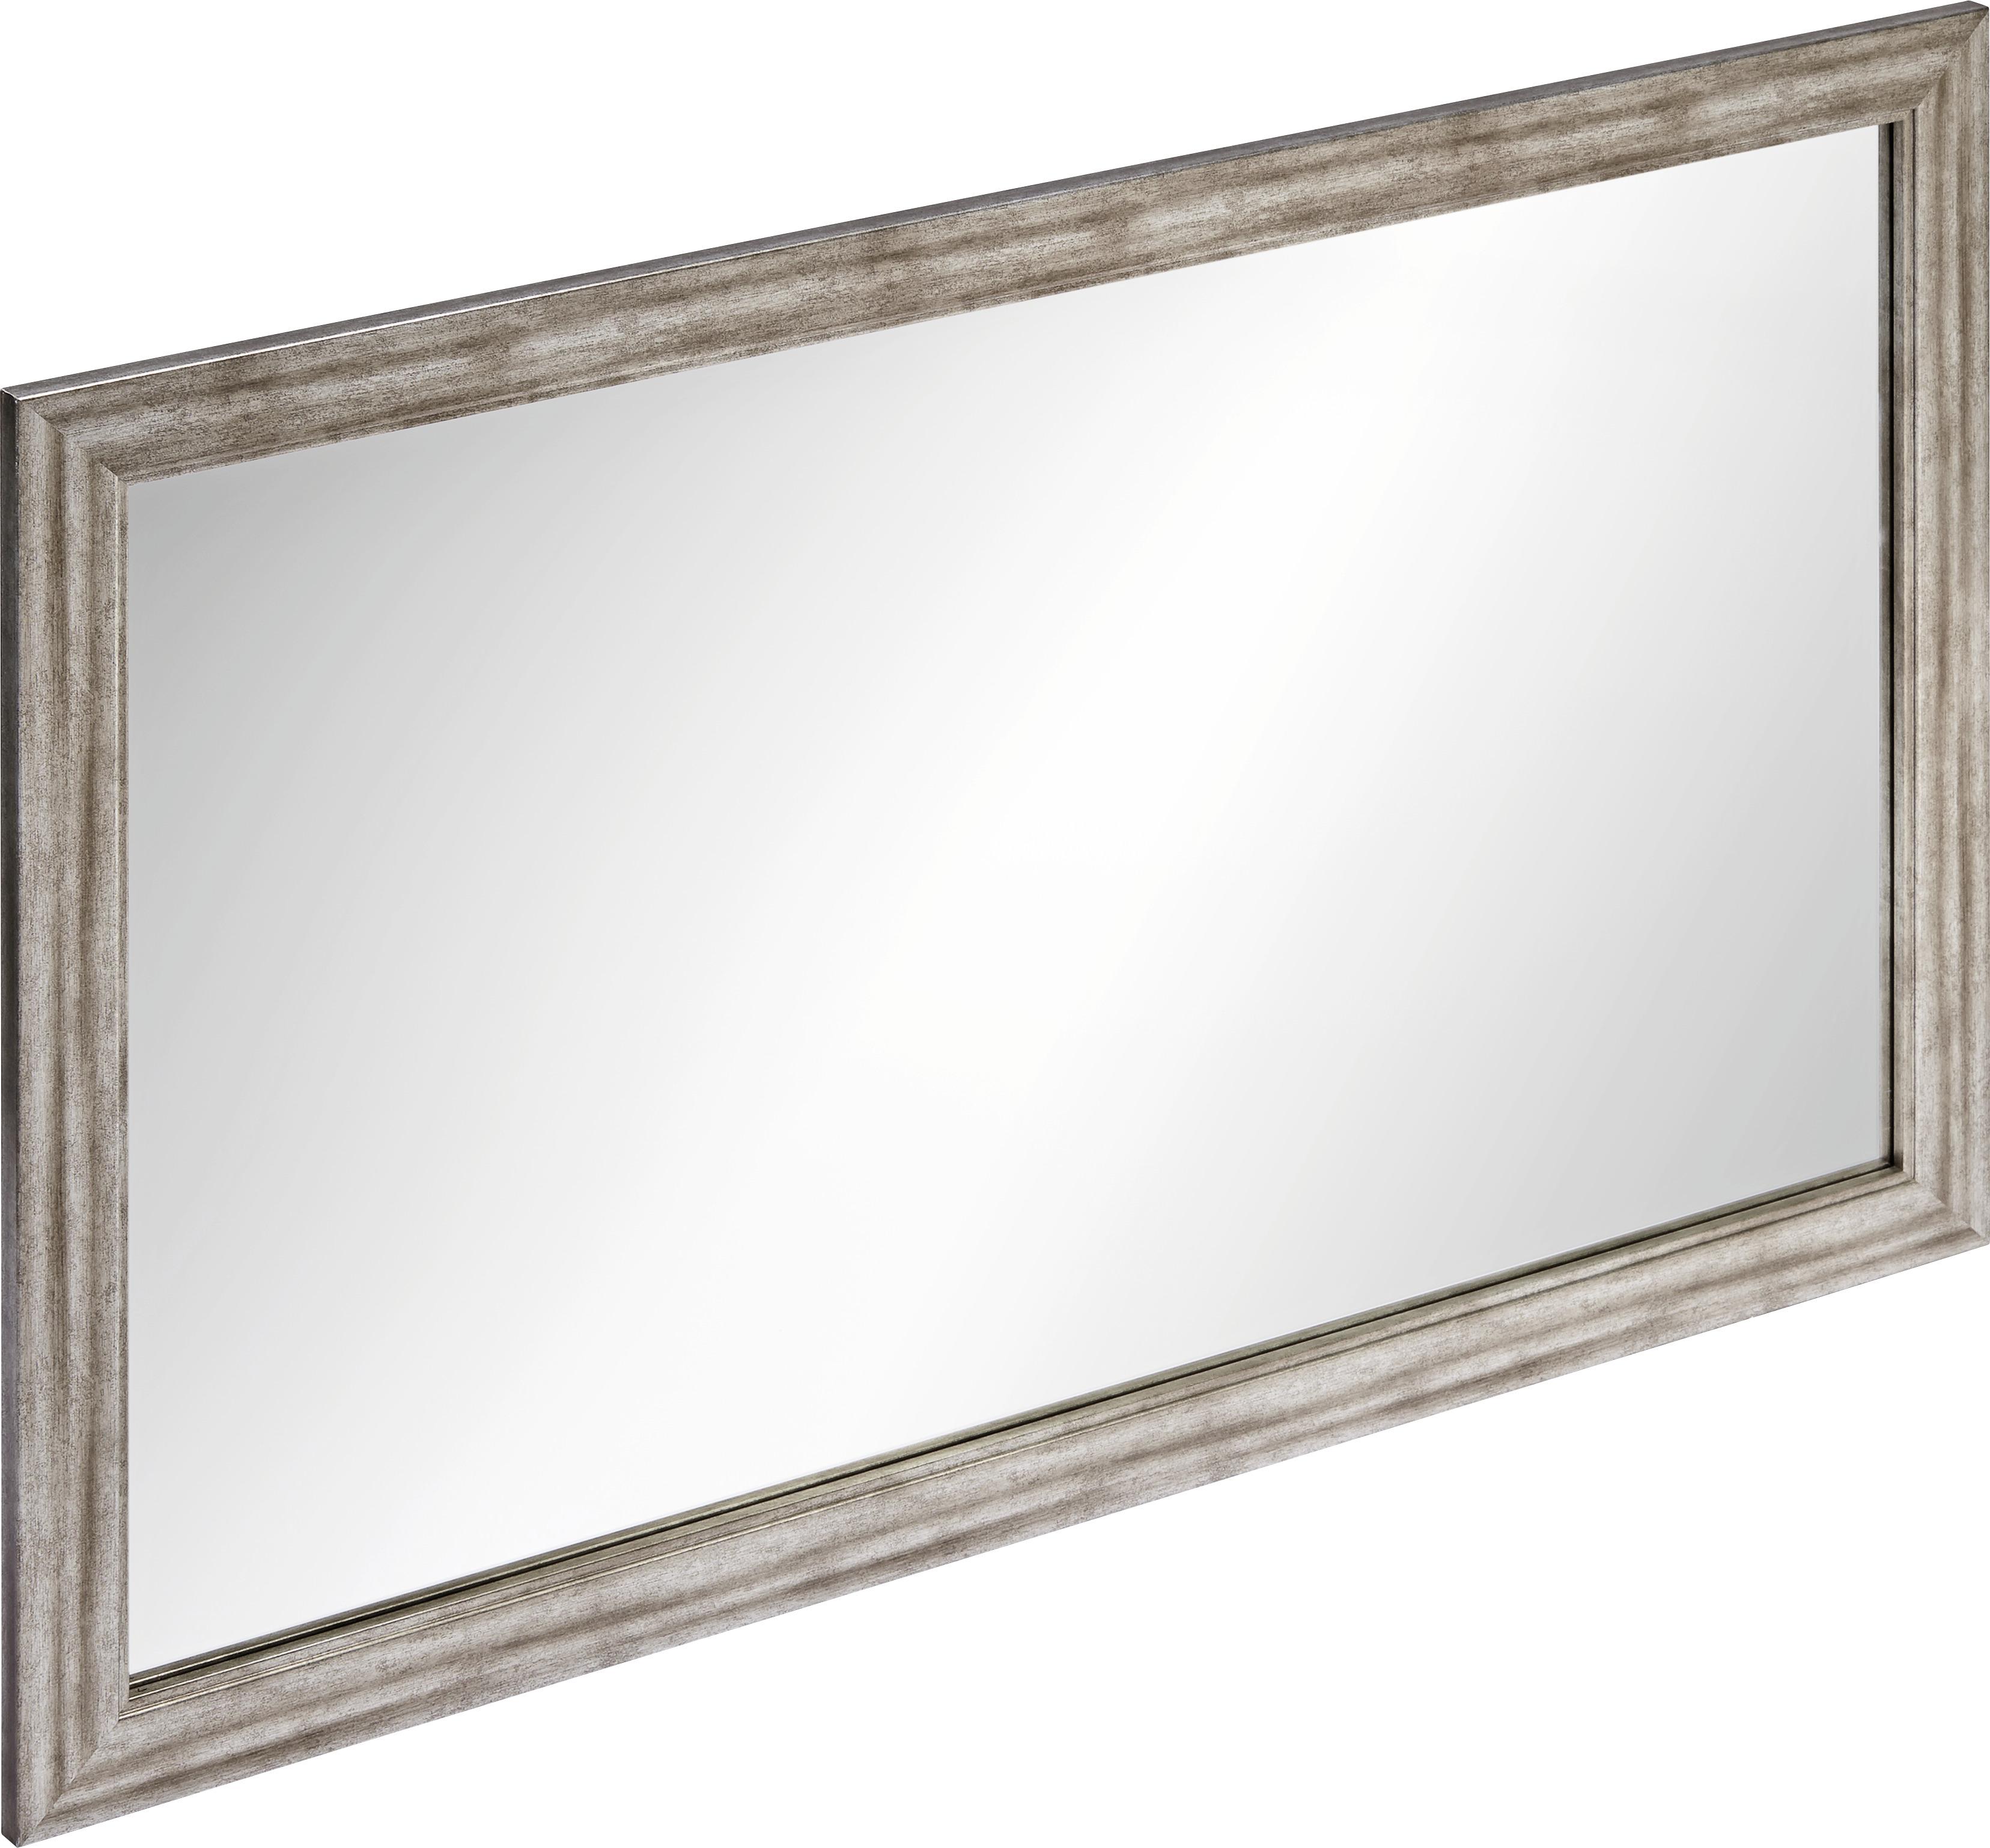 Stensko Ogledalo Metallic - srebrne barve/barve niklja, leseni material (70/110cm) - Modern Living